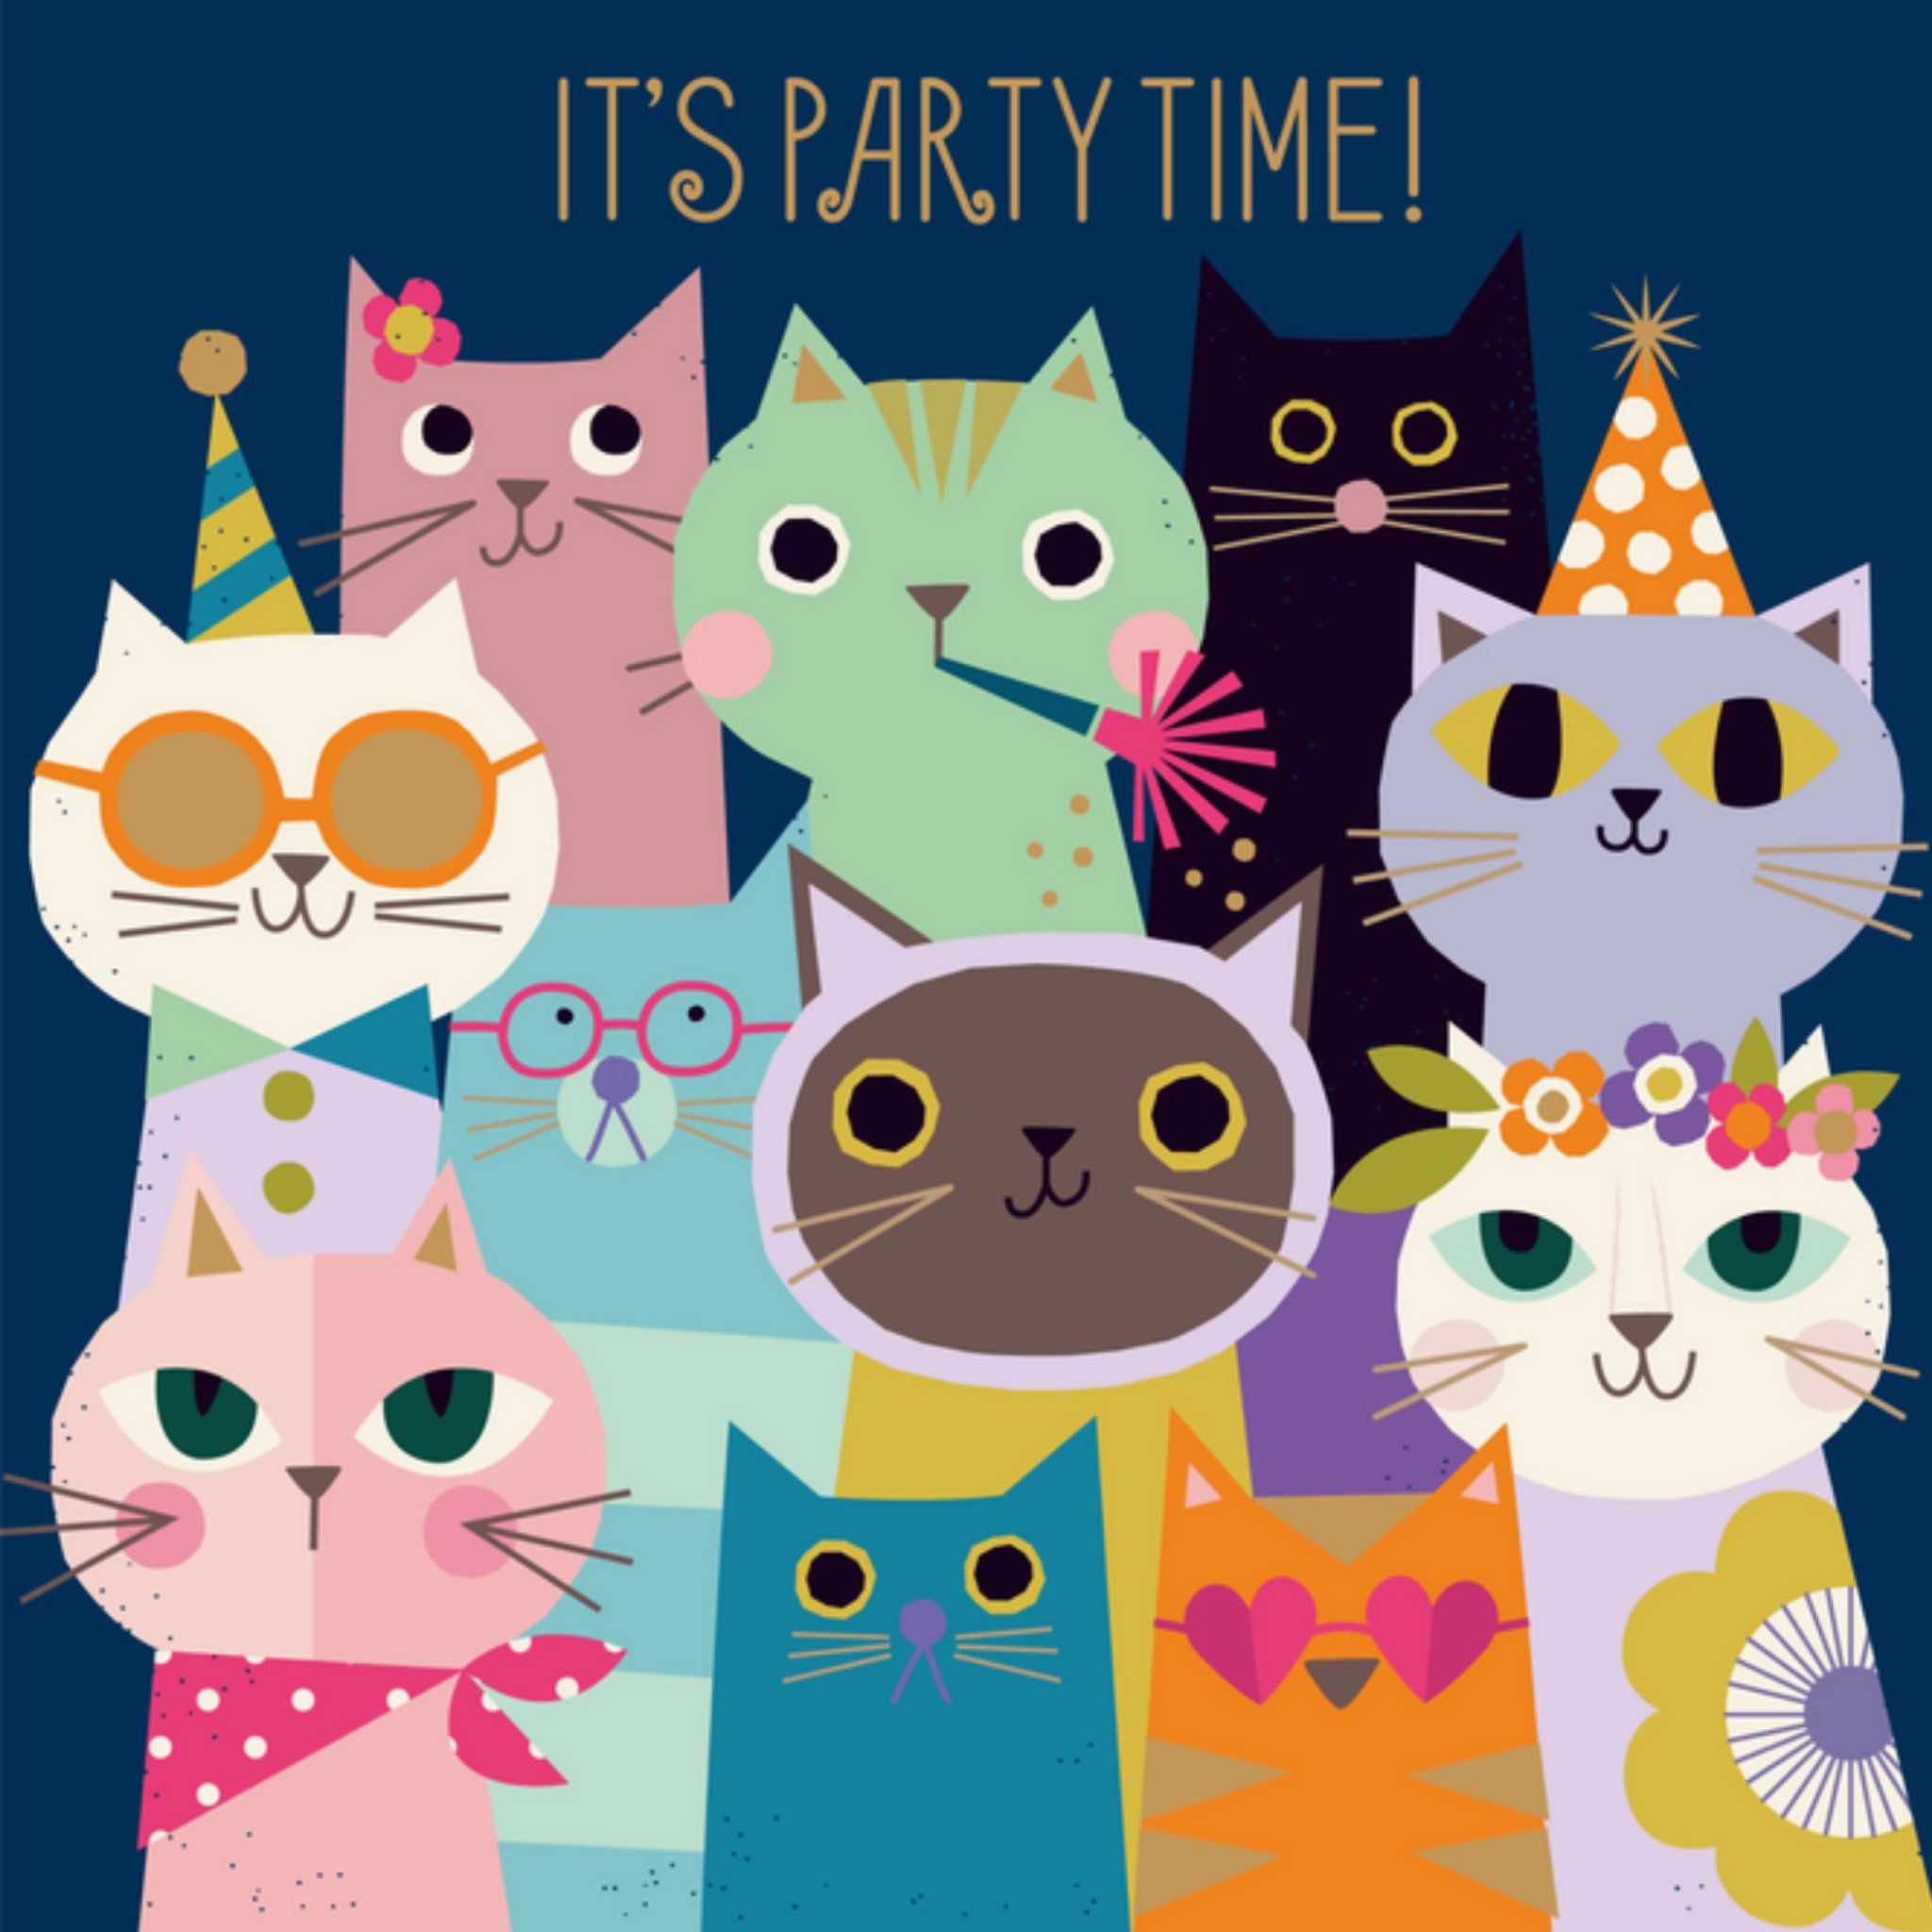 Paperclip - Verjaardagskaart - It's party time!